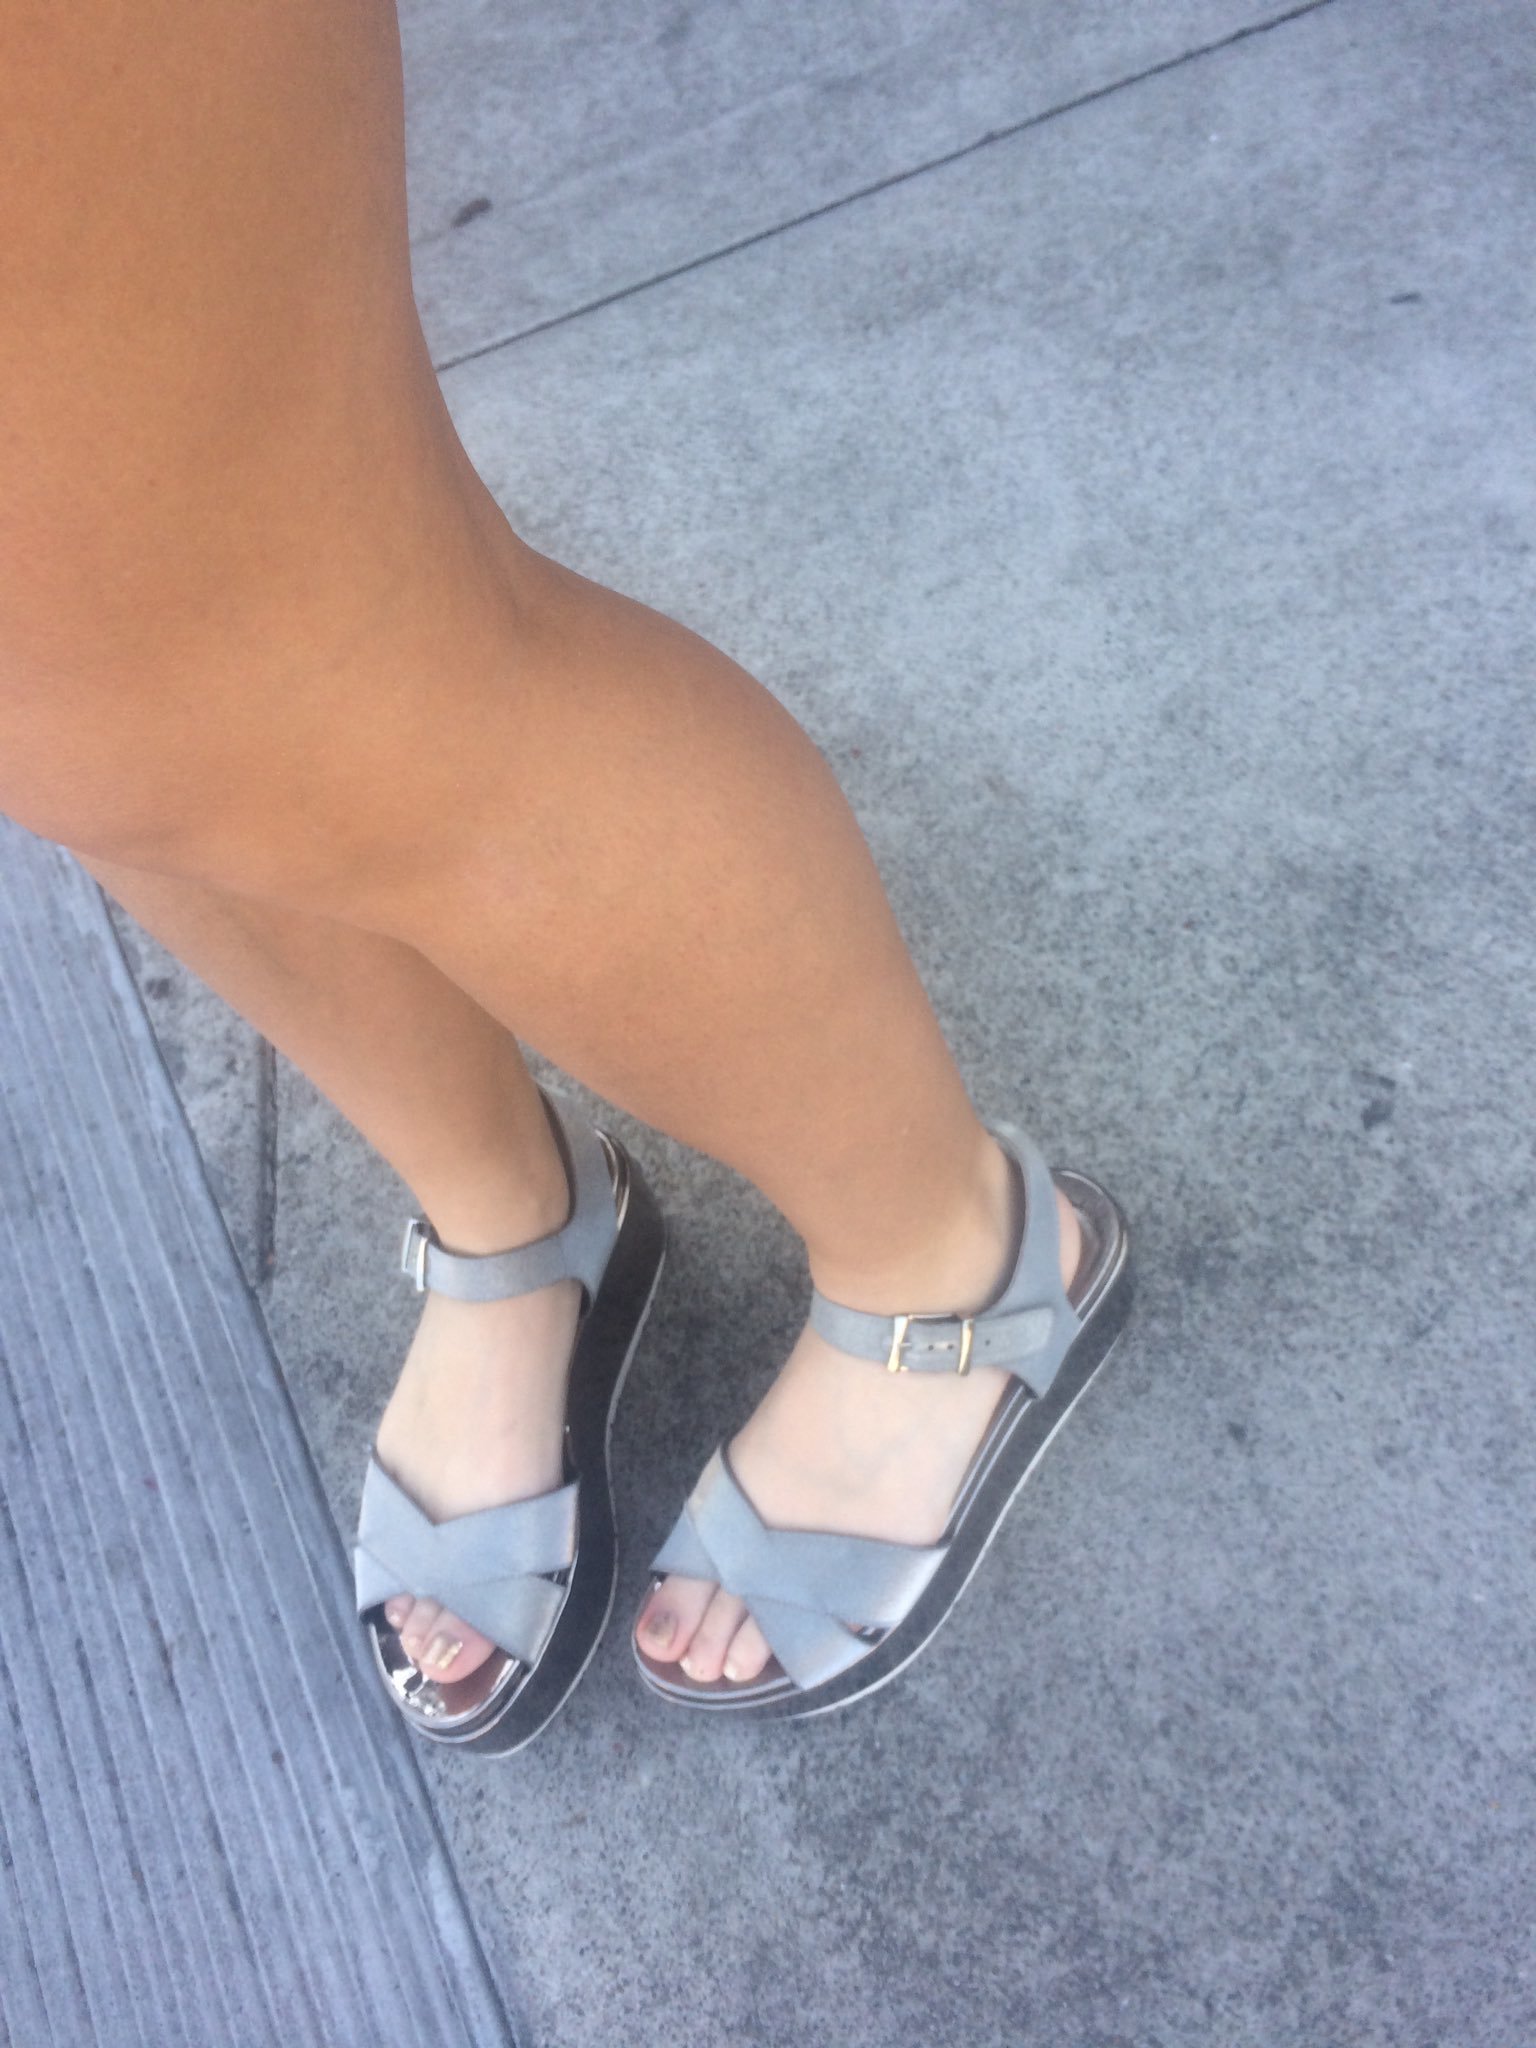 Candid Silver Flip Flop Feet